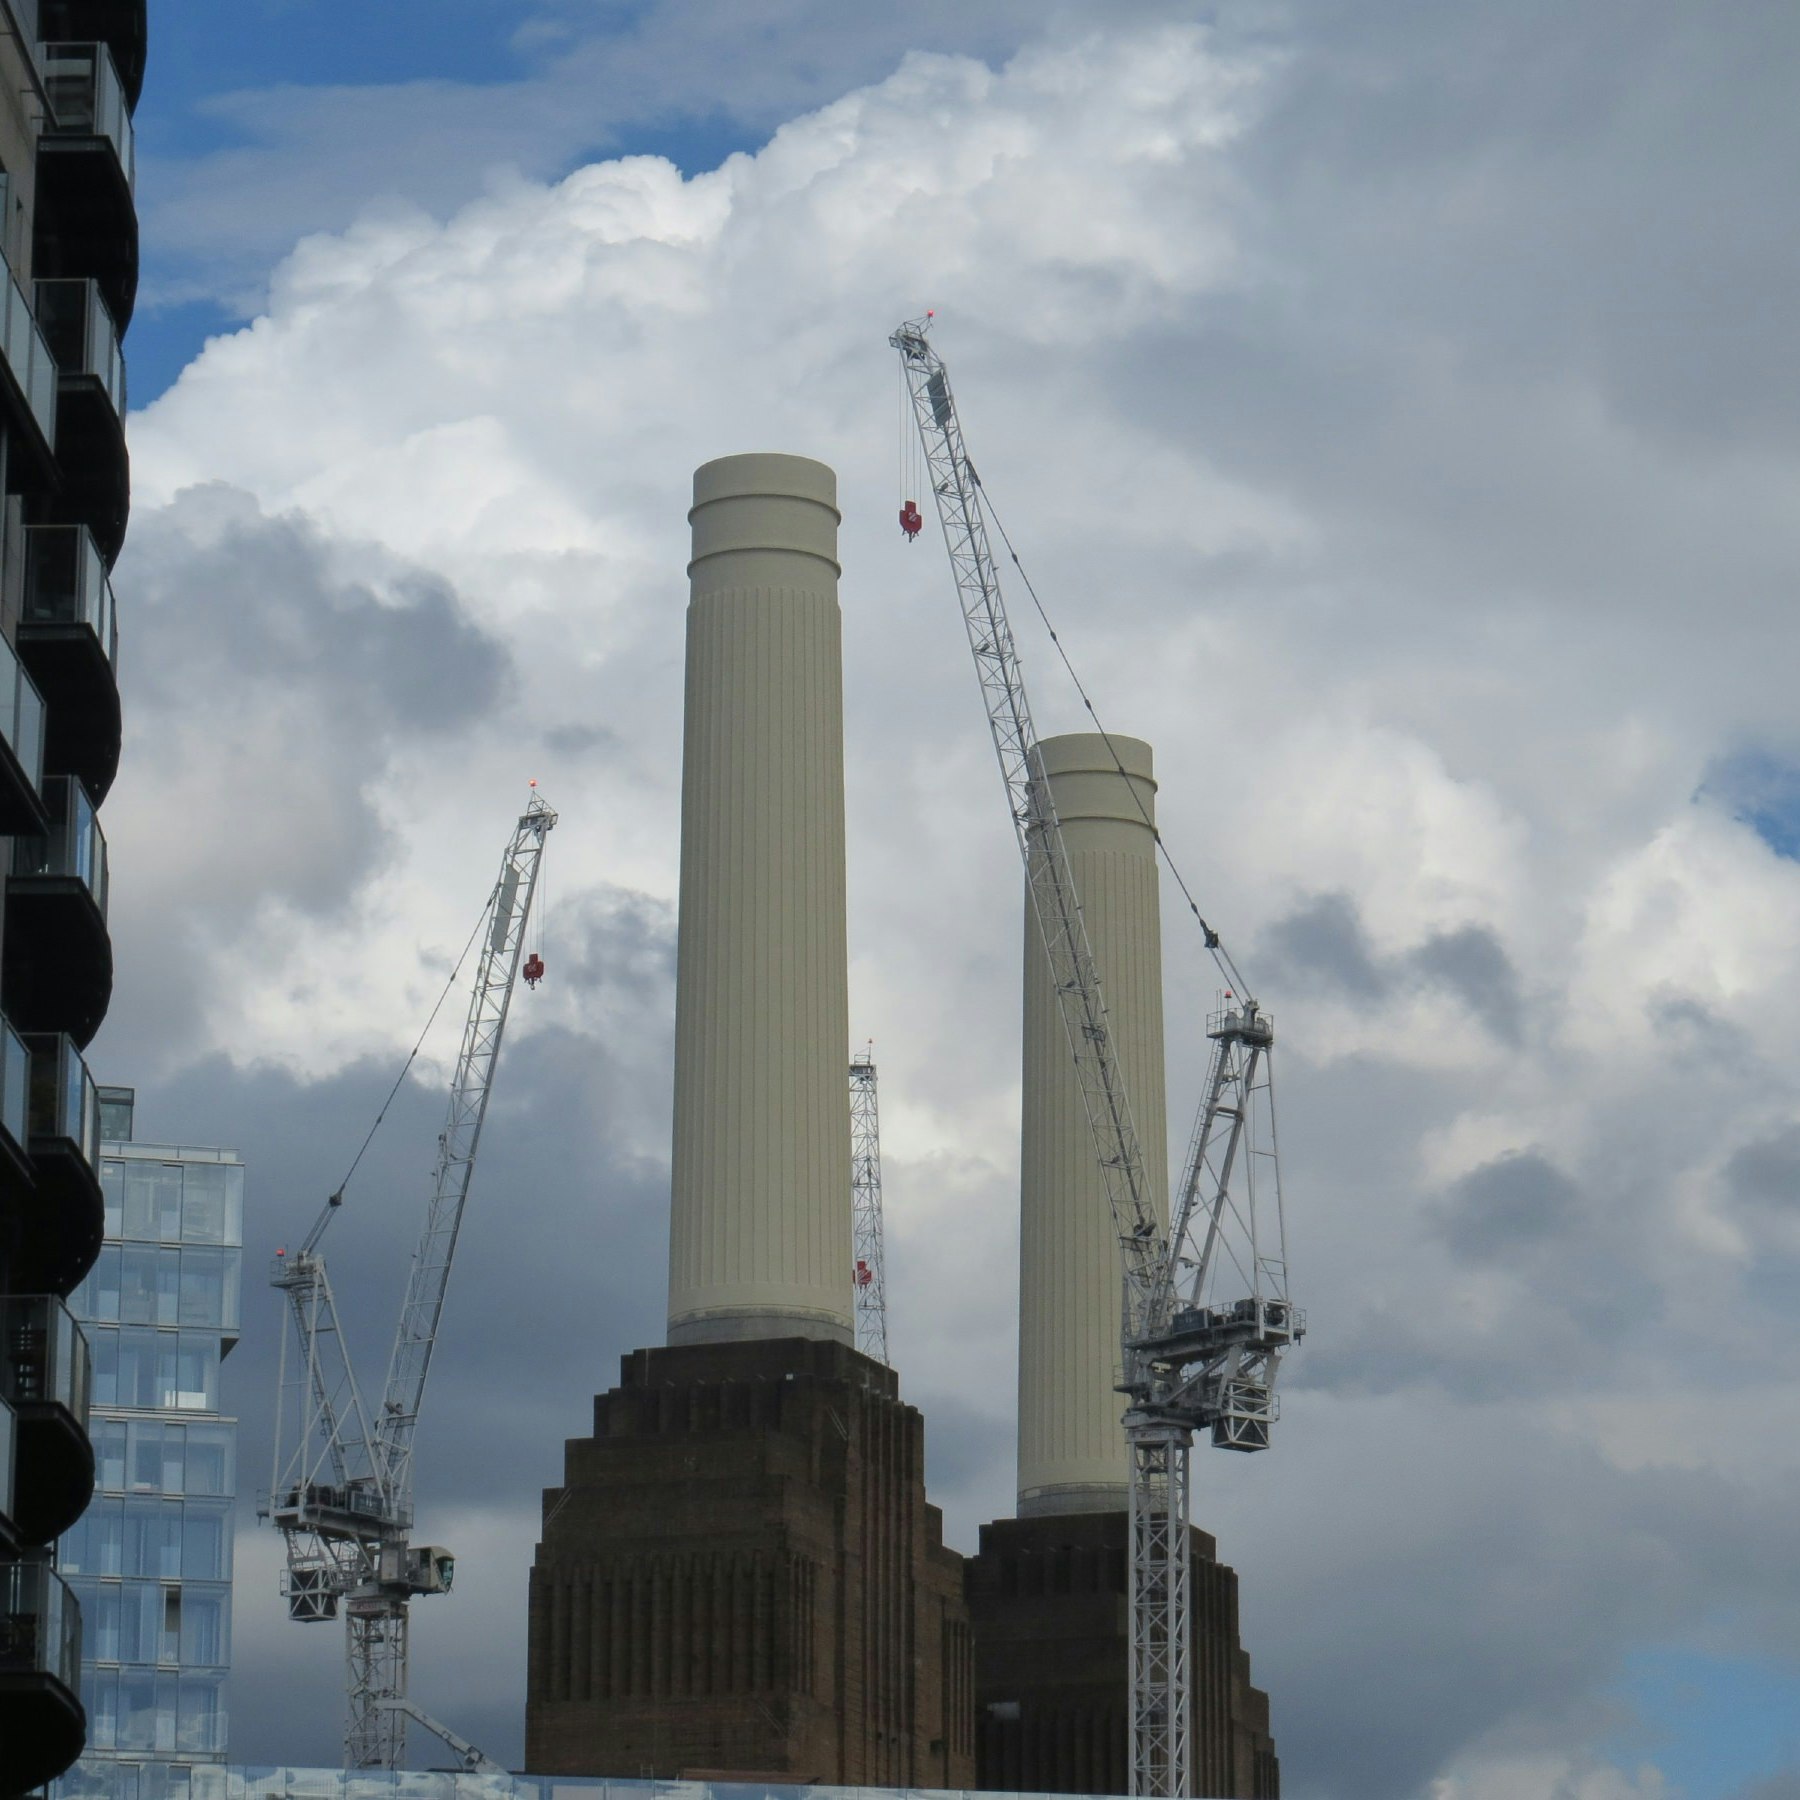 Battersea Power Station chimneys seen between two buildings